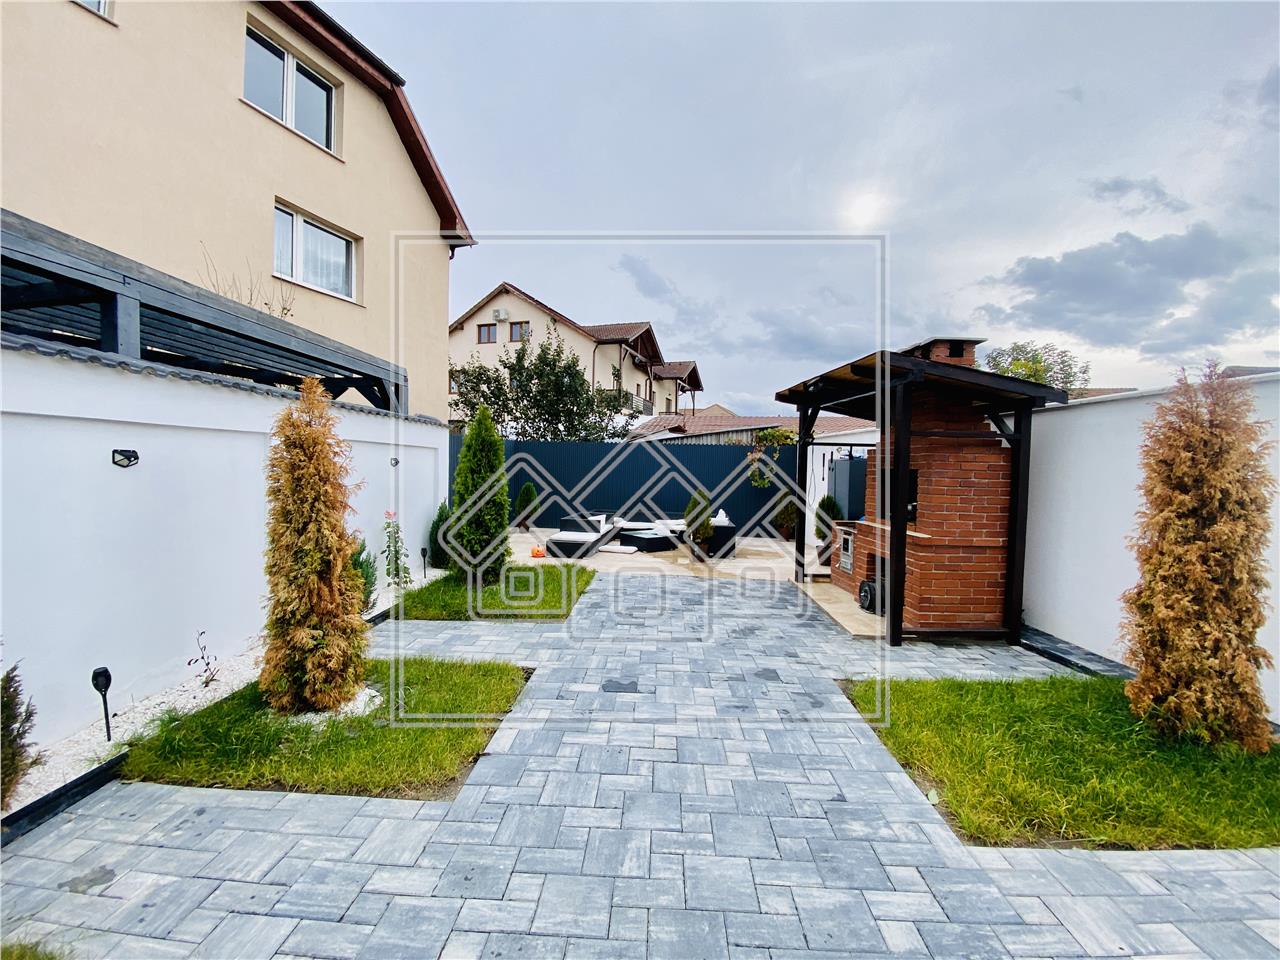 Casa de vanzare in Sibiu - confort lux - 110 mp utili + teren de 256 m